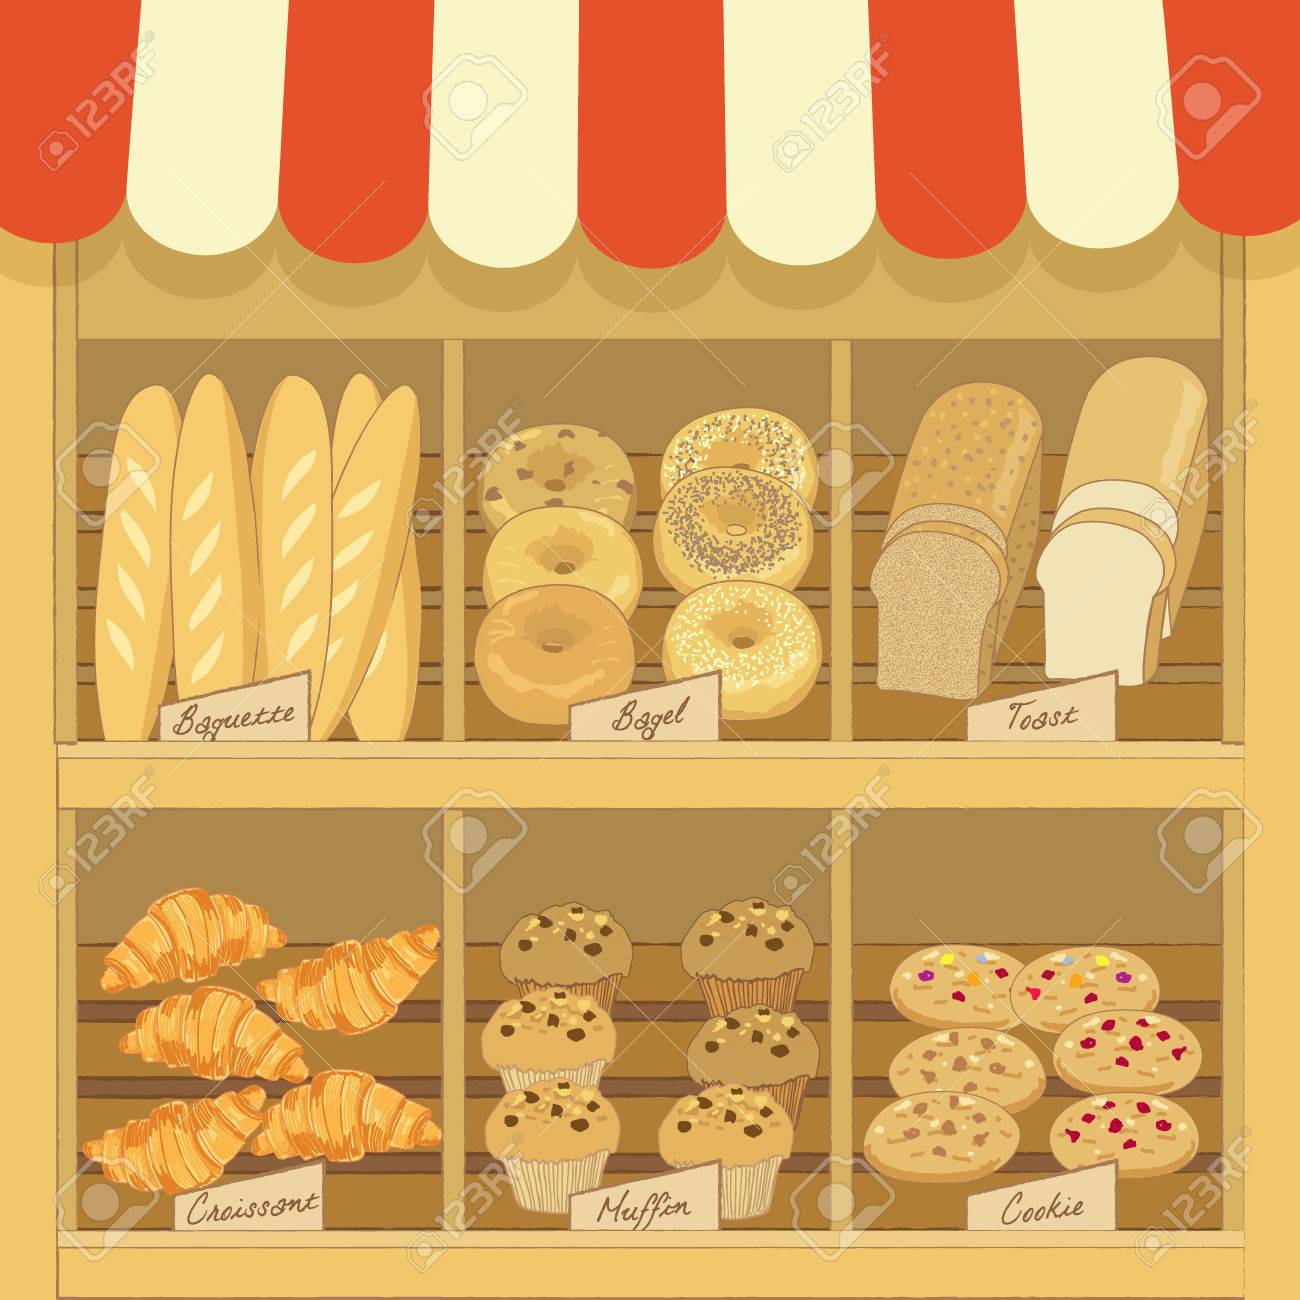 La Boulangerie Crostini  Recrute Des Vendeurs /Vendeuses Pour Ses Points De Vente